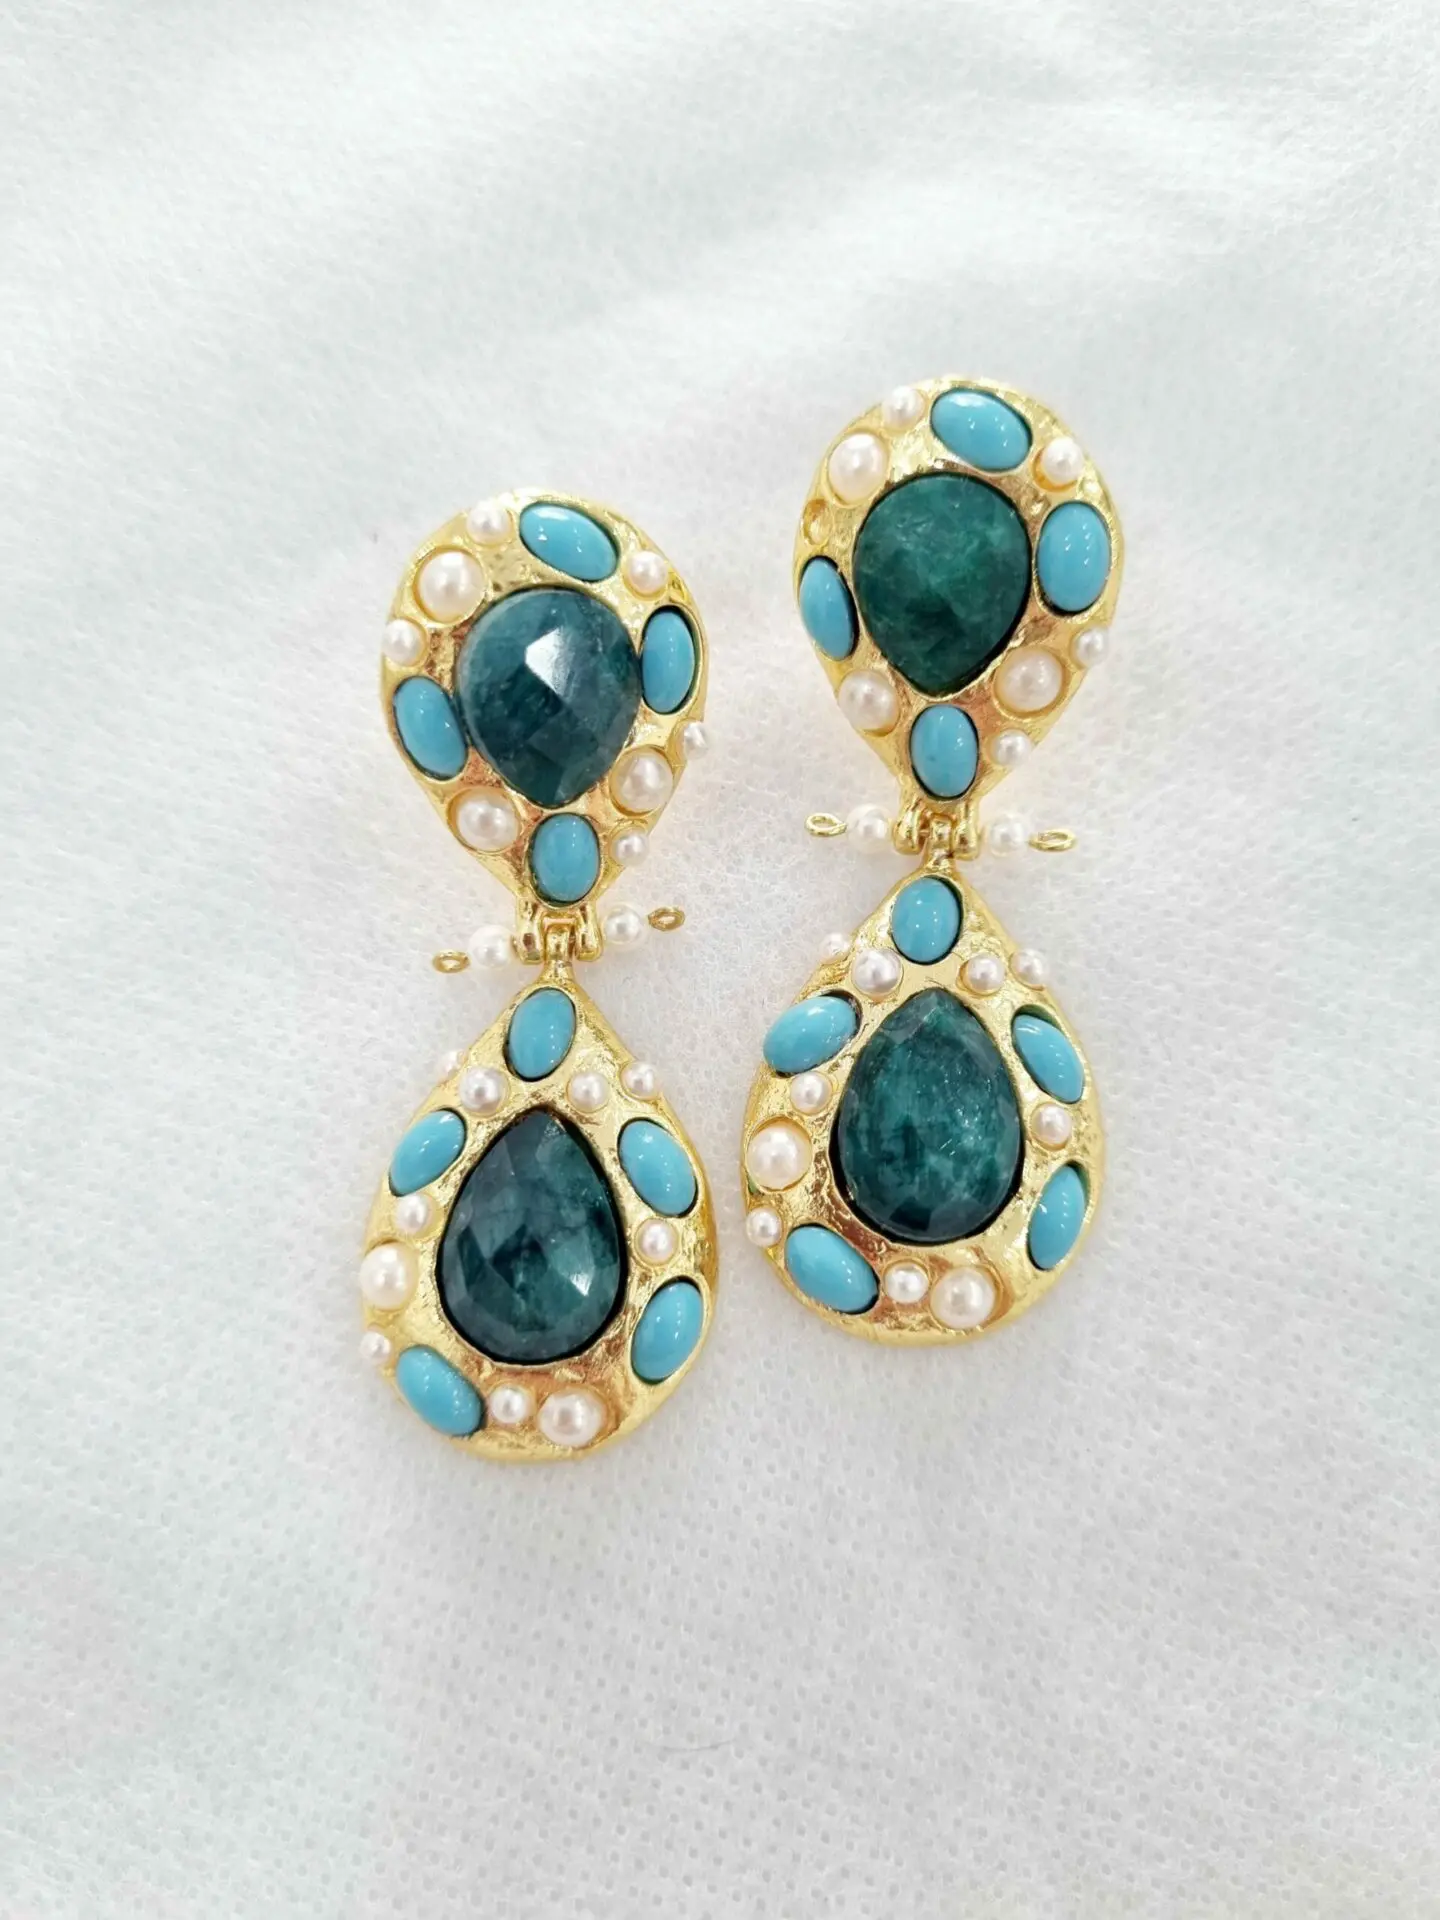 Boucles d'oreilles réalisées sur une base en laiton avec des pierres turquoises naturelles et des perles de Majorque serties Longueur 5cm Poids 12,3g.